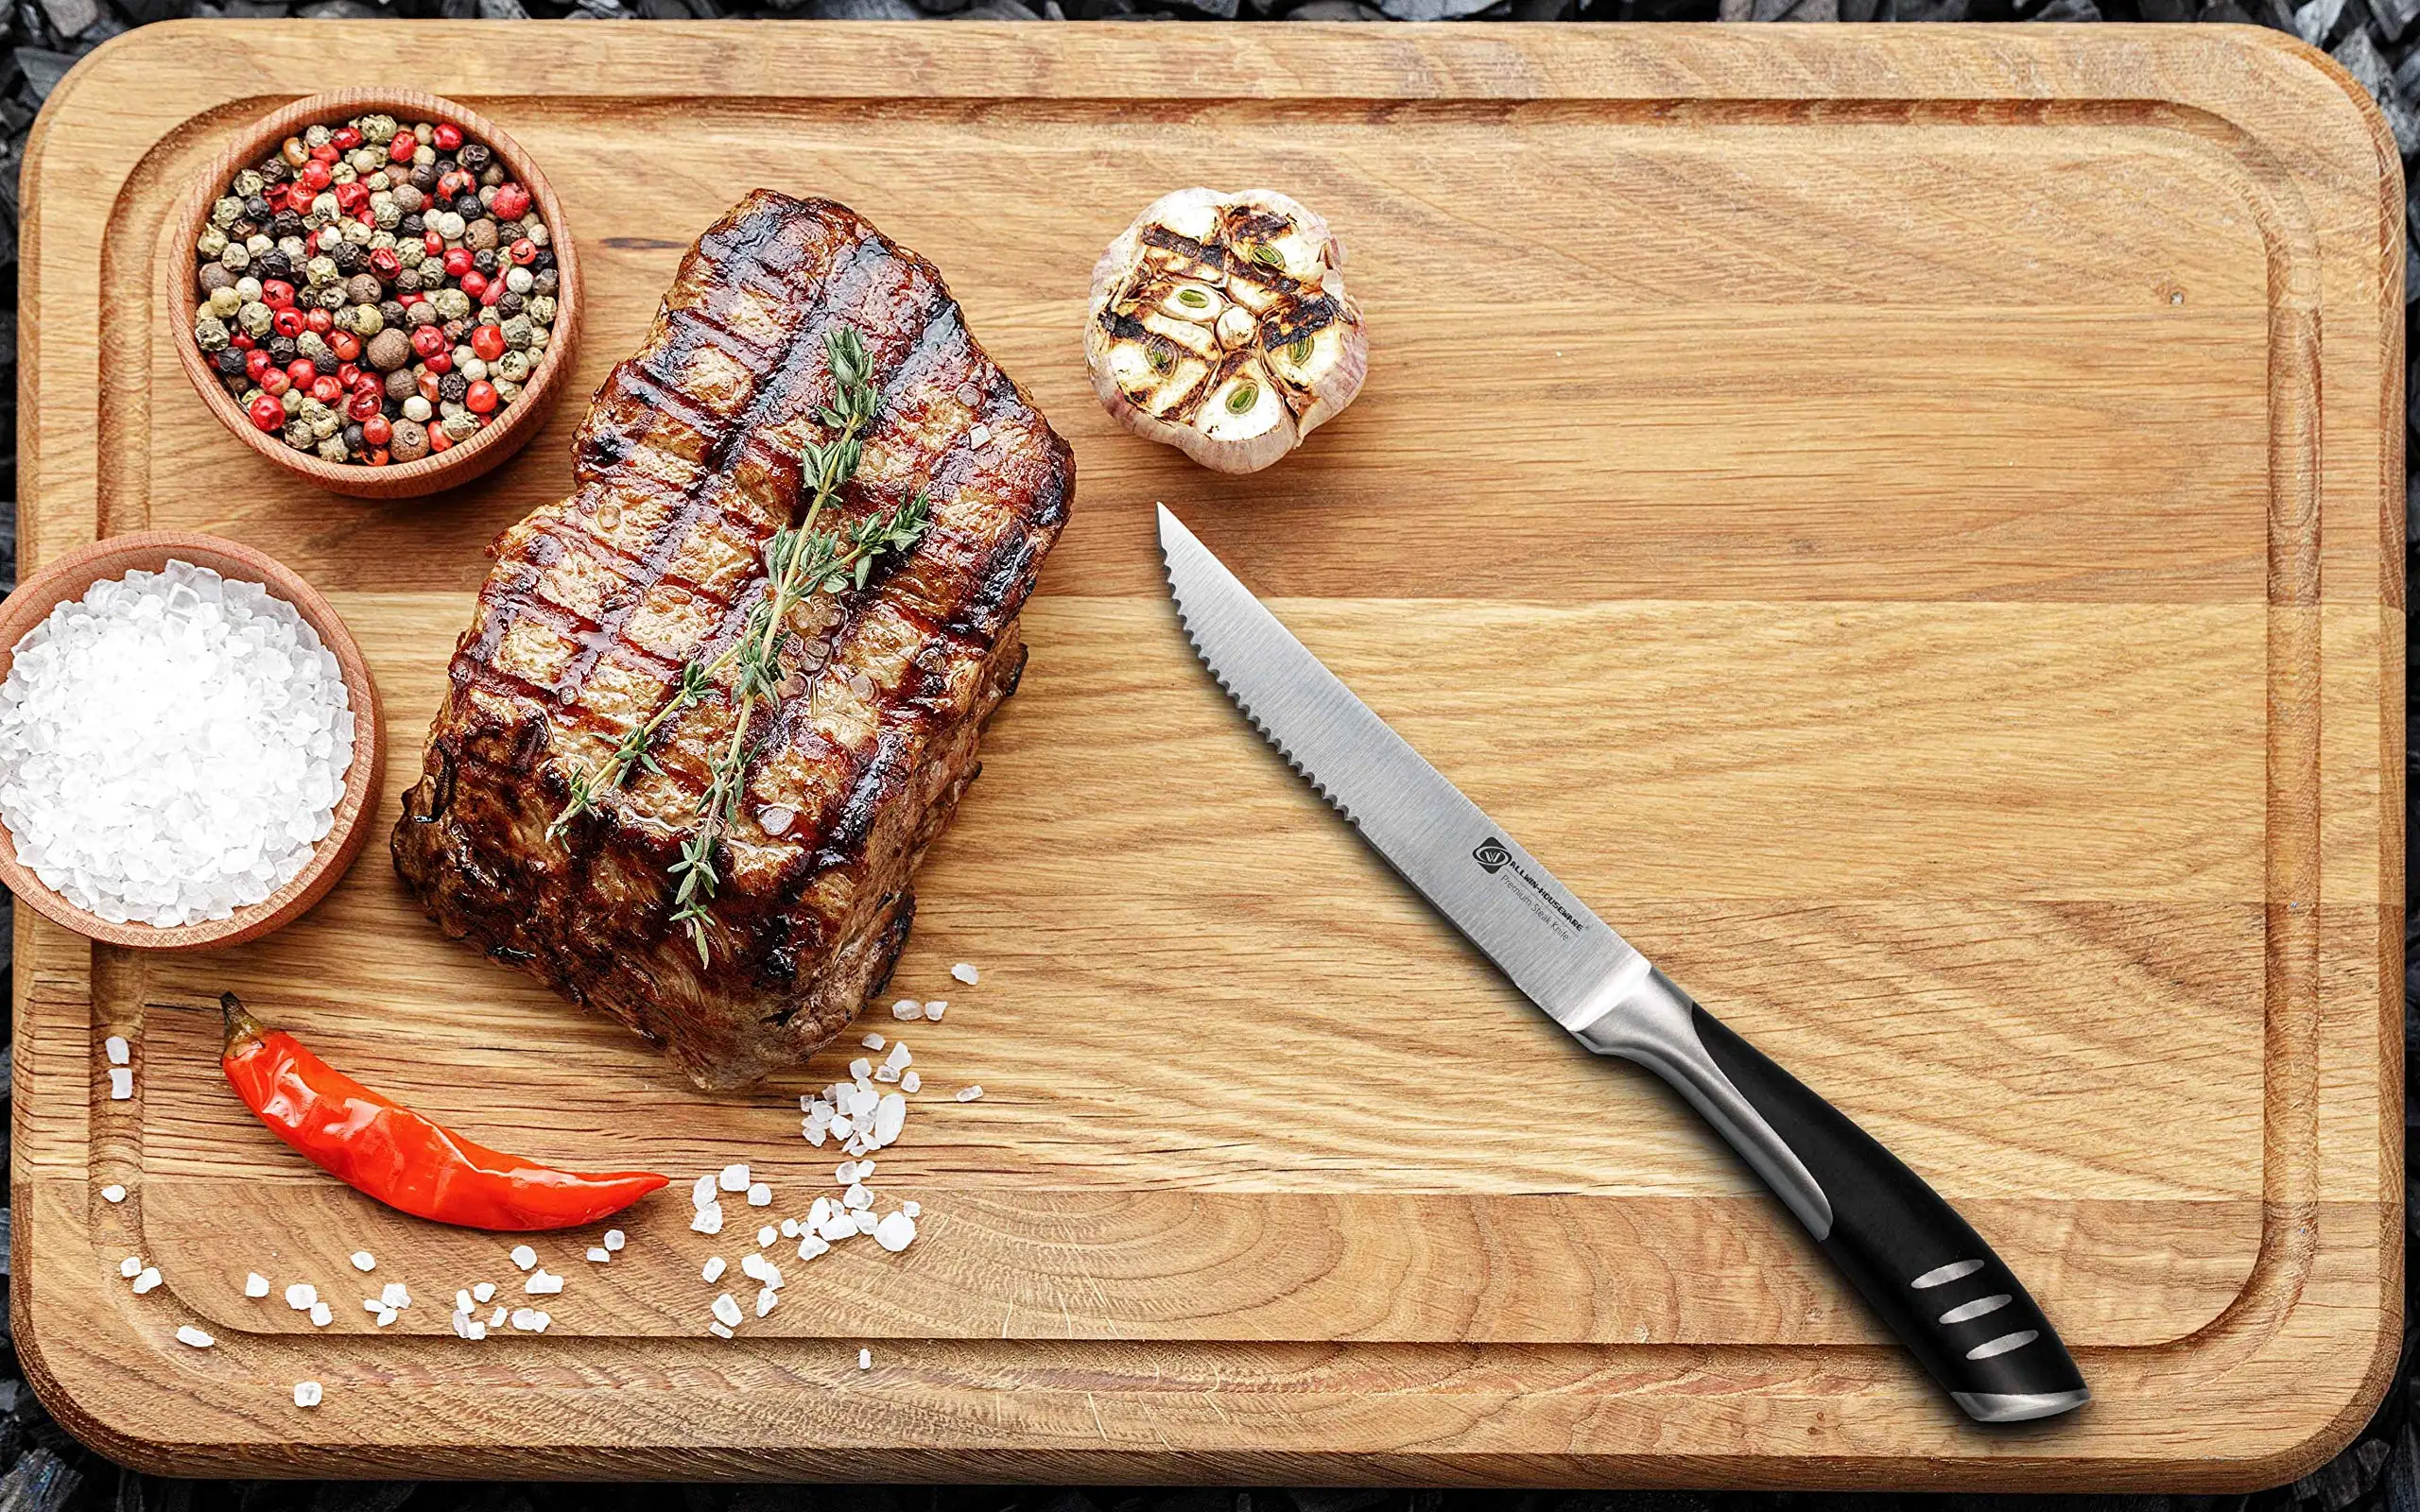 https://ae01.alicdn.com/kf/S2820b5768ff144e3a37474616cef6c8d3/4-8pcs-Steak-Knife-German-High-Carbon-Stainless-Steel-Serrated-Chef-Knife-Length-Dinner-Knife-Full.jpg